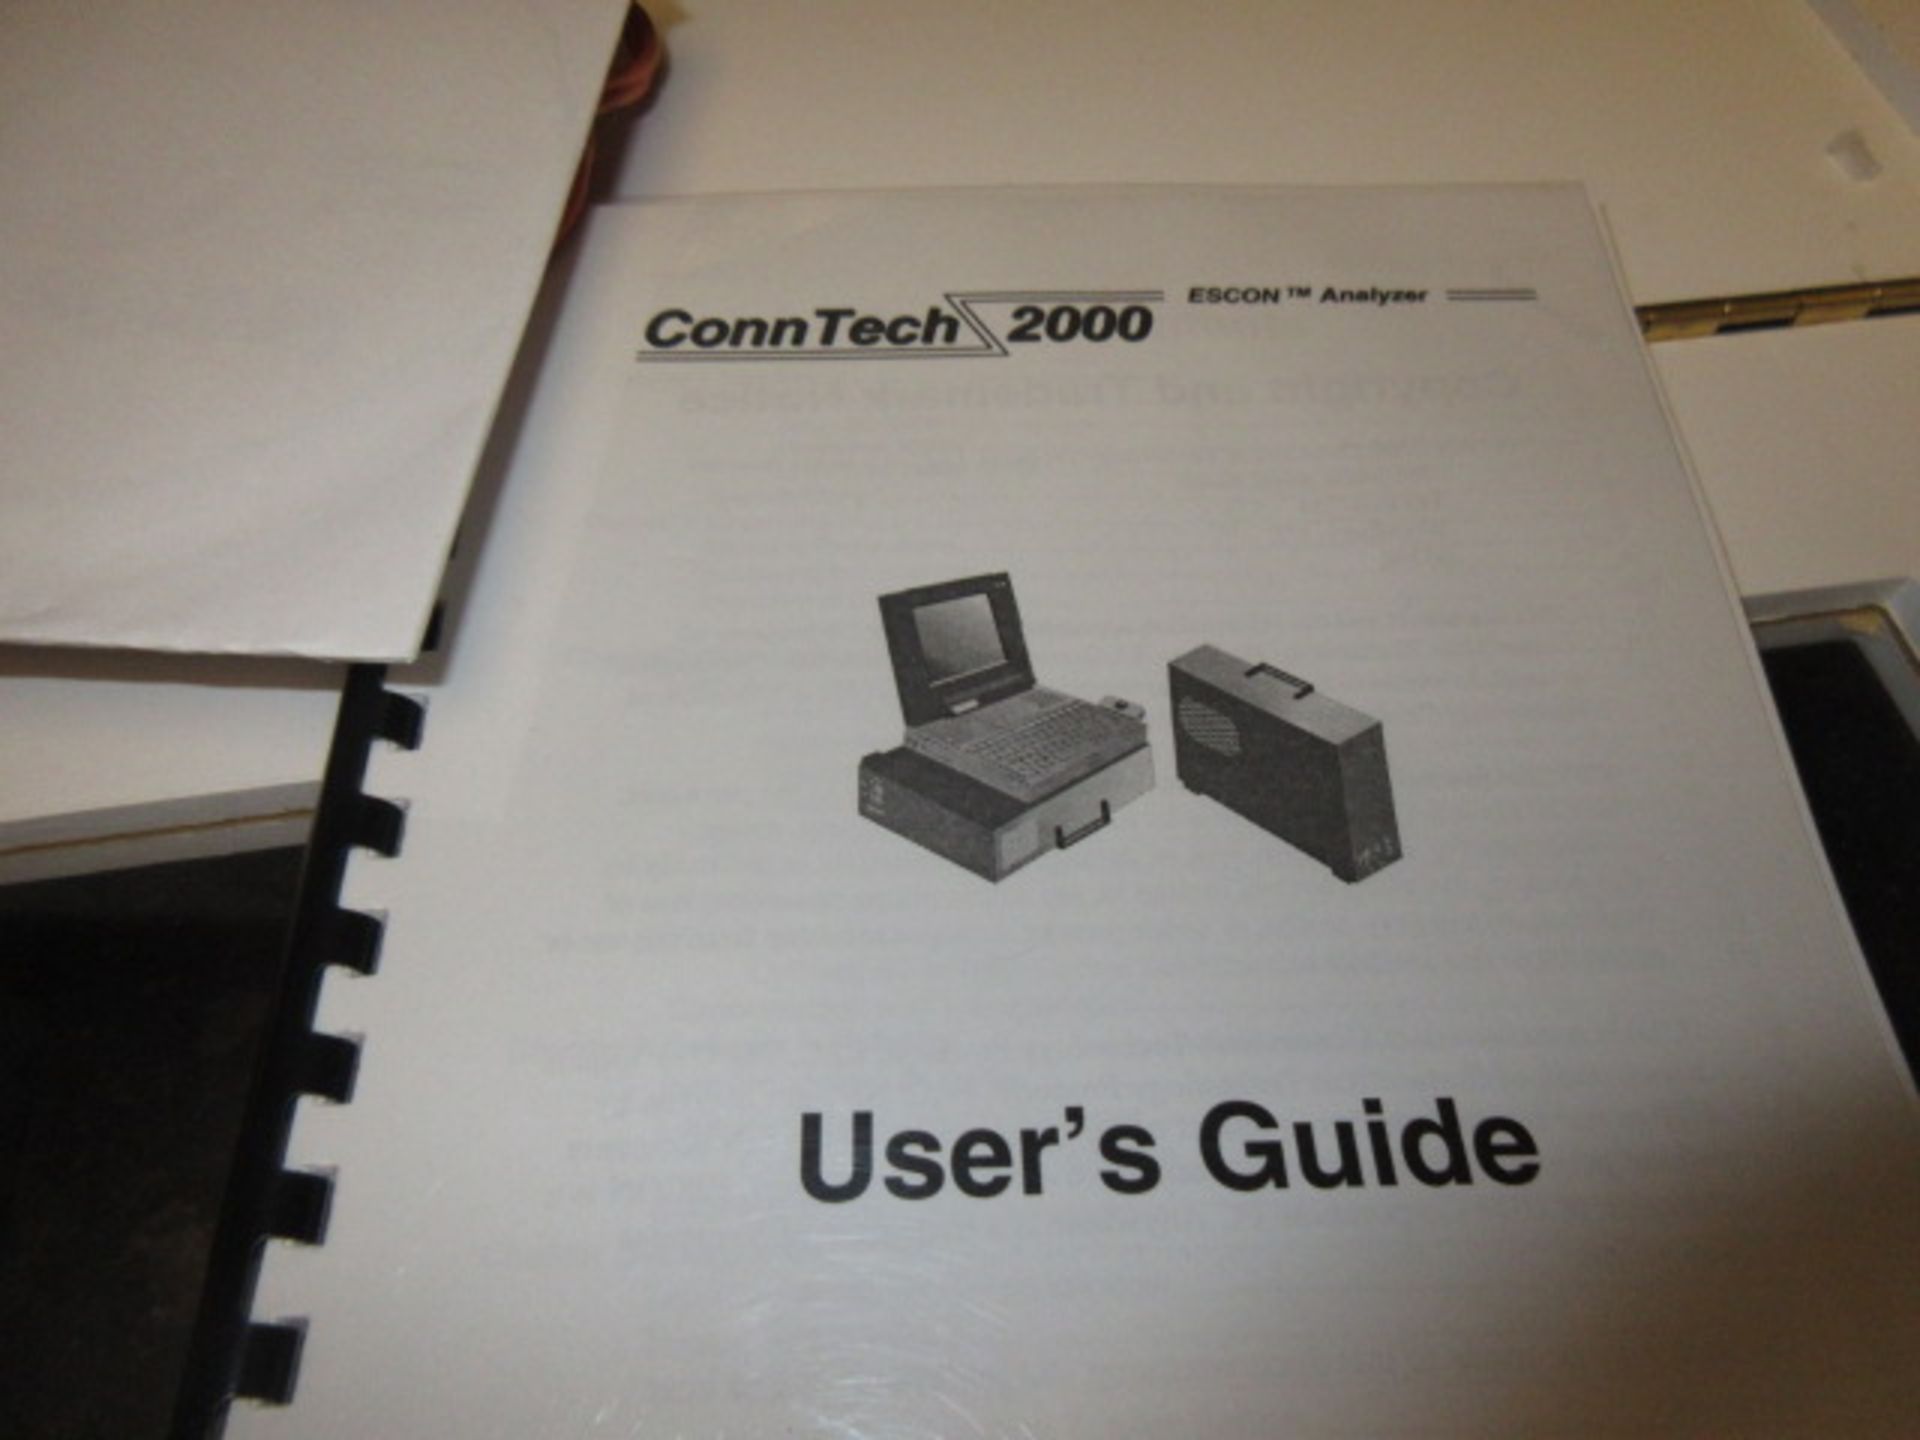 Conn Tech 2000 ESC ESCON-S Analyzer. ESCON-S Analyzer, with case & manual, 100-240v. SN# A001-1901- - Image 4 of 4